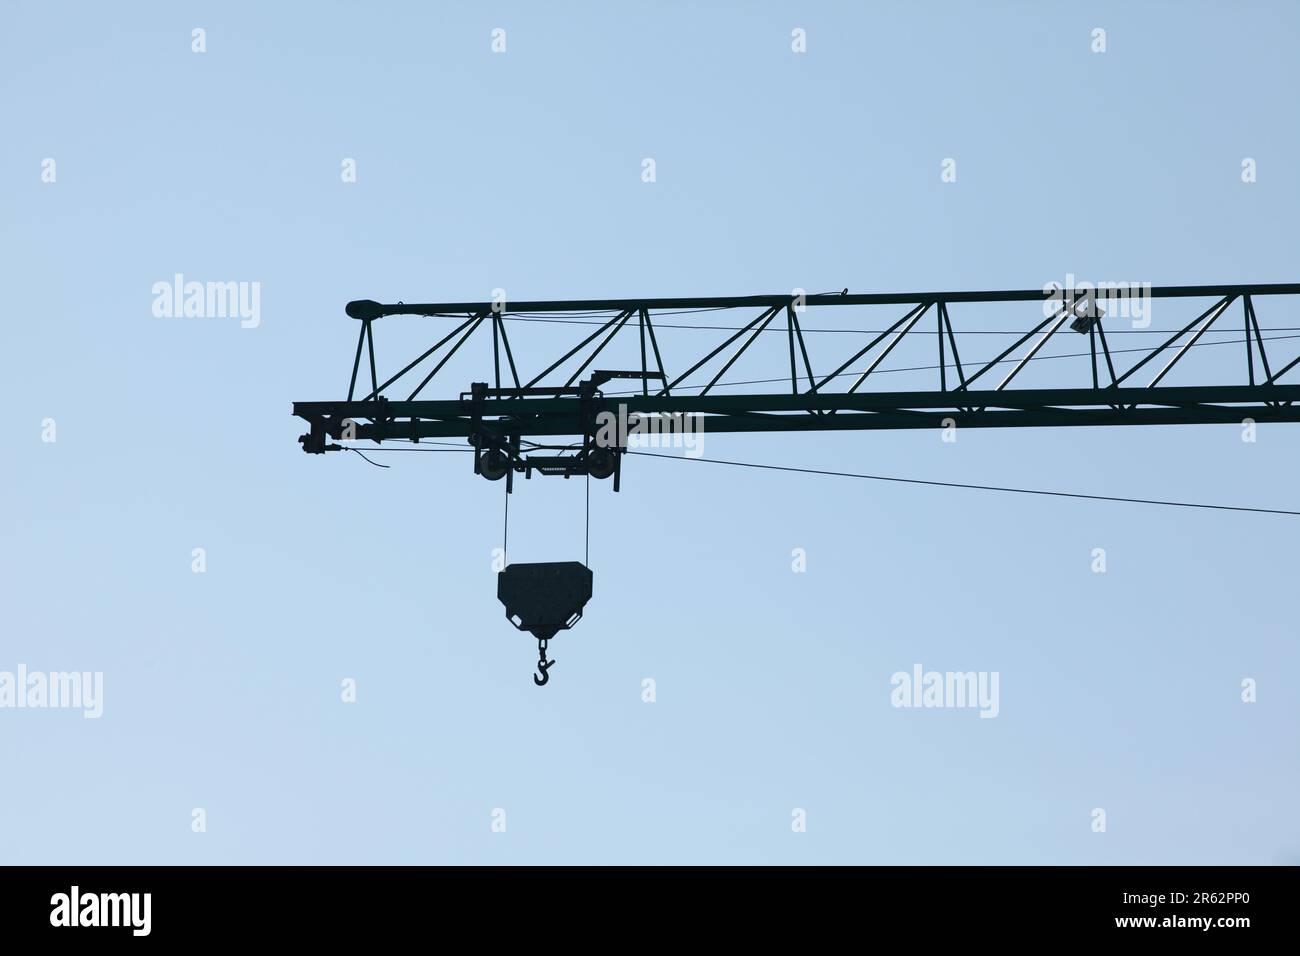 Una grande gru è vista in posizione stazionaria, sullo sfondo di un cielo limpido Foto Stock